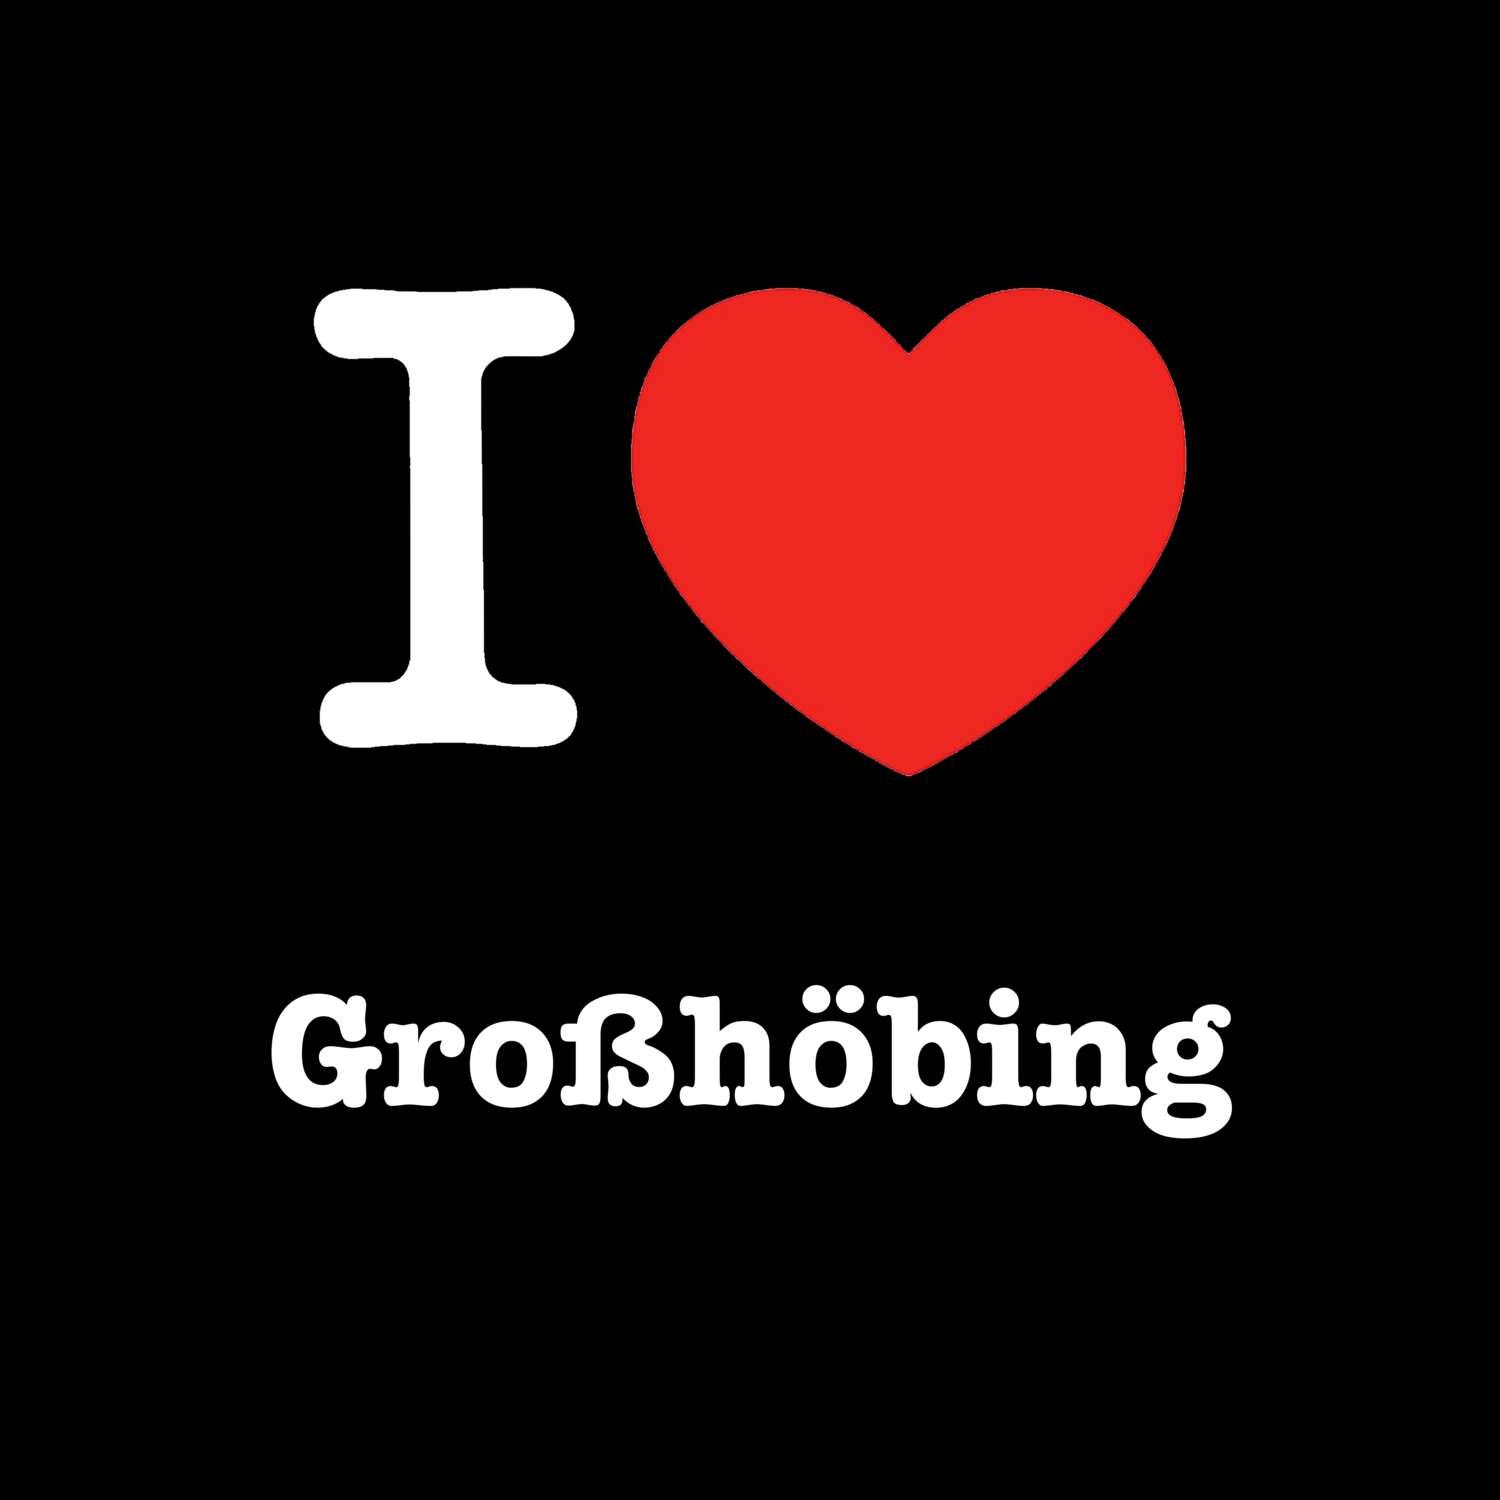 Großhöbing T-Shirt »I love«